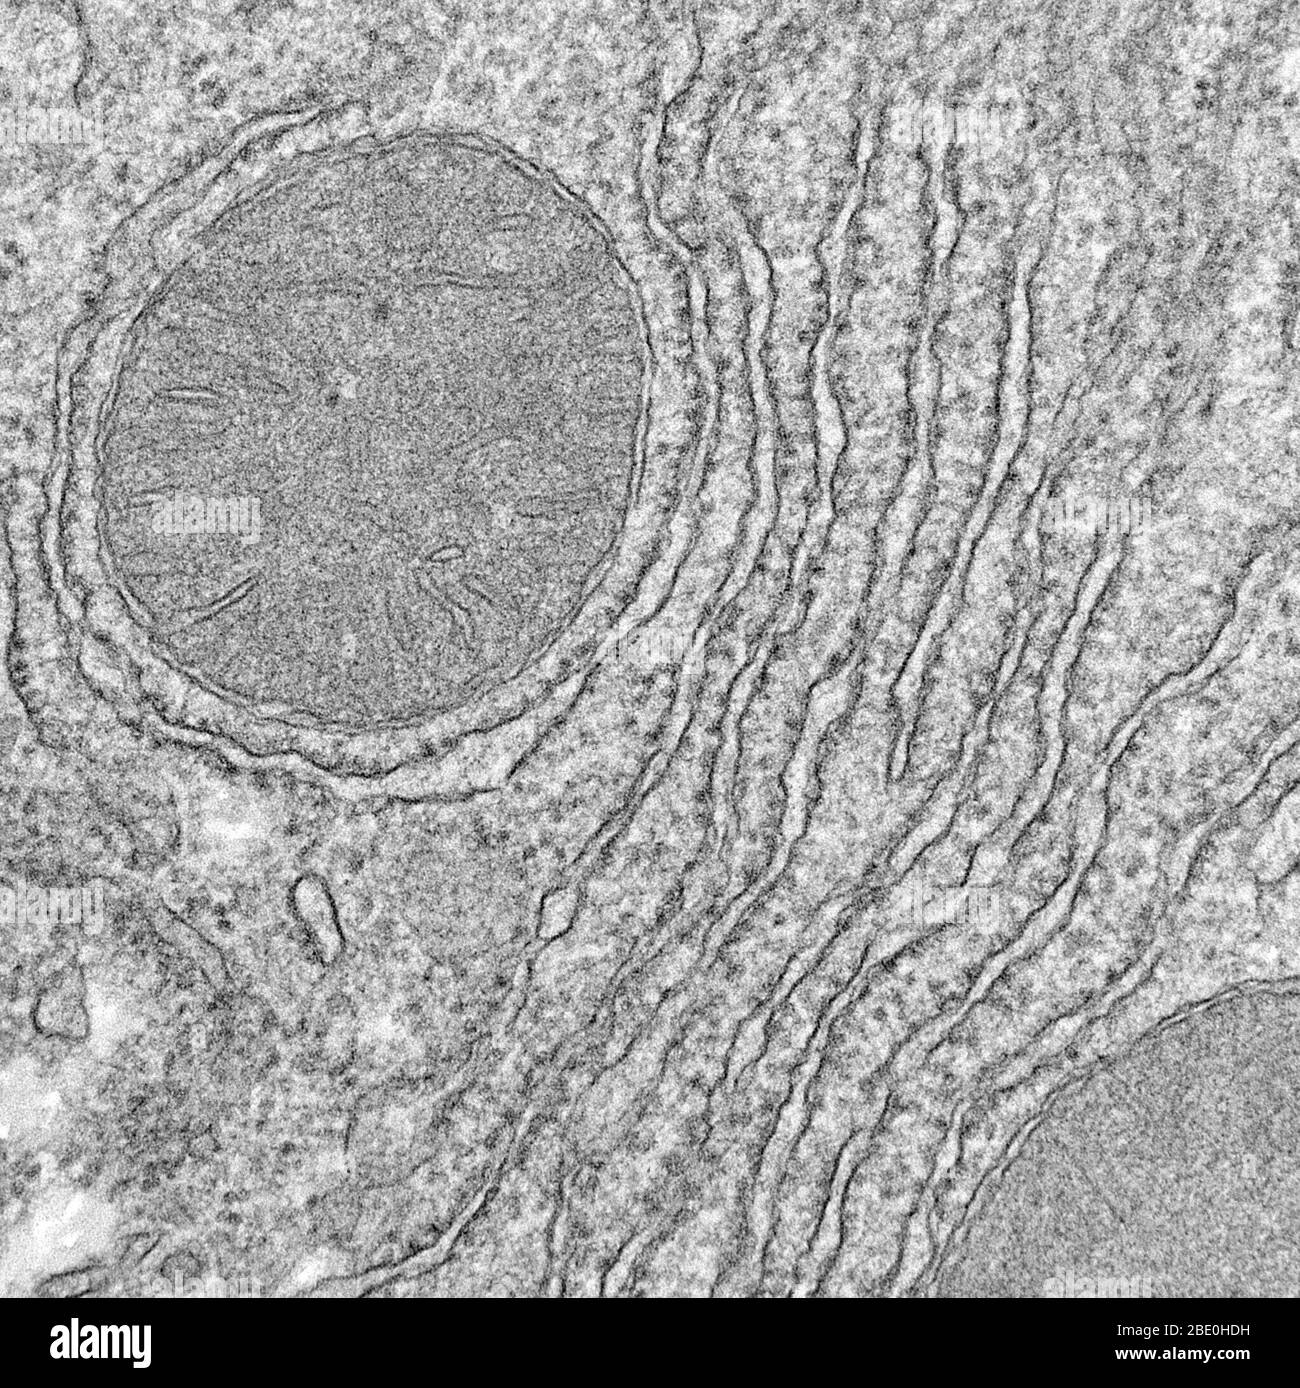 Micrographe électronique de transmission (TEM) montrant les mitochondries et le réticulum endoplasmique rugueux. Les mitochondries (mitochondries plurales) sont une organelle à double membrane qui se trouve dans tous les organismes eucaryotes. Les mitochondries génèrent la majeure partie de l'approvisionnement de la cellule en adénosine triphosphate (ATP), utilisée comme source d'énergie chimique. Sauf coloration spécifique, elles ne sont pas visibles. En plus de fournir de l'énergie cellulaire, les mitochondries sont impliquées dans d'autres tâches, telles que la signalisation, la différenciation cellulaire et la mort cellulaire, ainsi que le maintien du contrôle du cycle cellulaire et de la croissance cellulaire. L'endoplasmique Banque D'Images